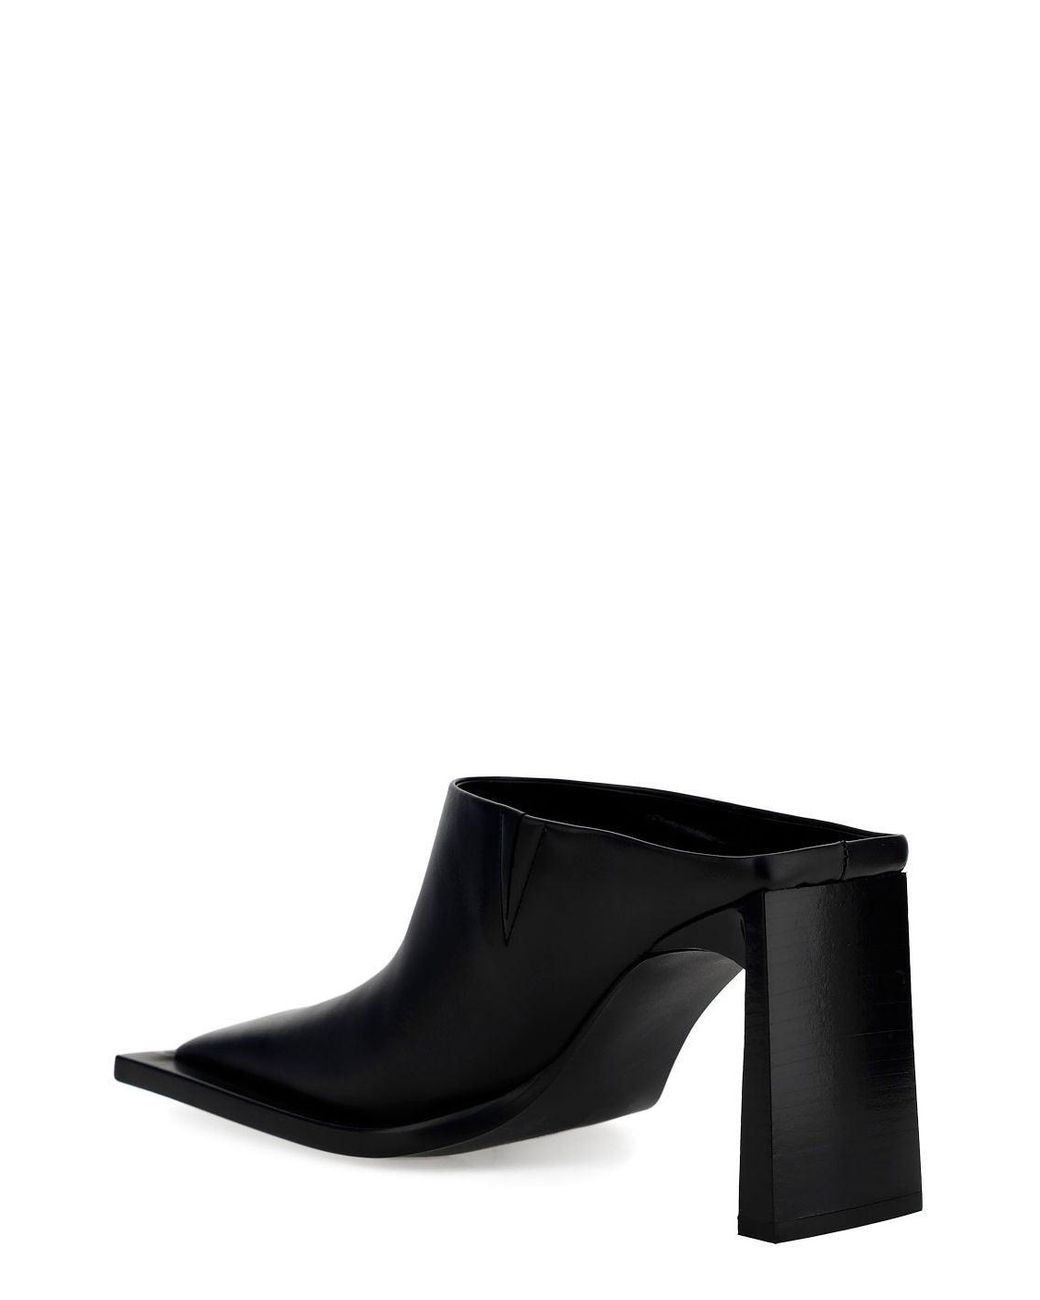 Balenciaga Square-toe Mules in Black | Lyst